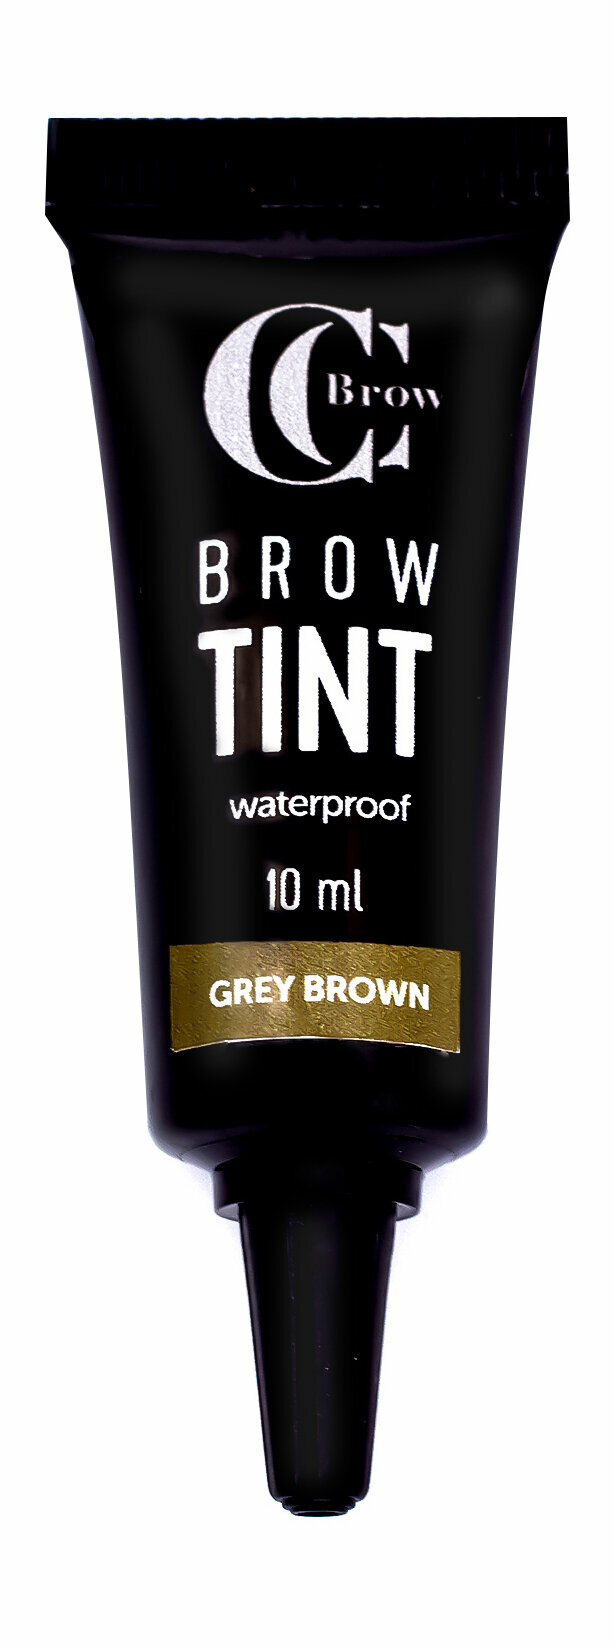 CC BROW Гелевый тинт для бровей Brow Tint CC Brow водостойкий, 10 мл, цвет серо-коричневый (grey brown)